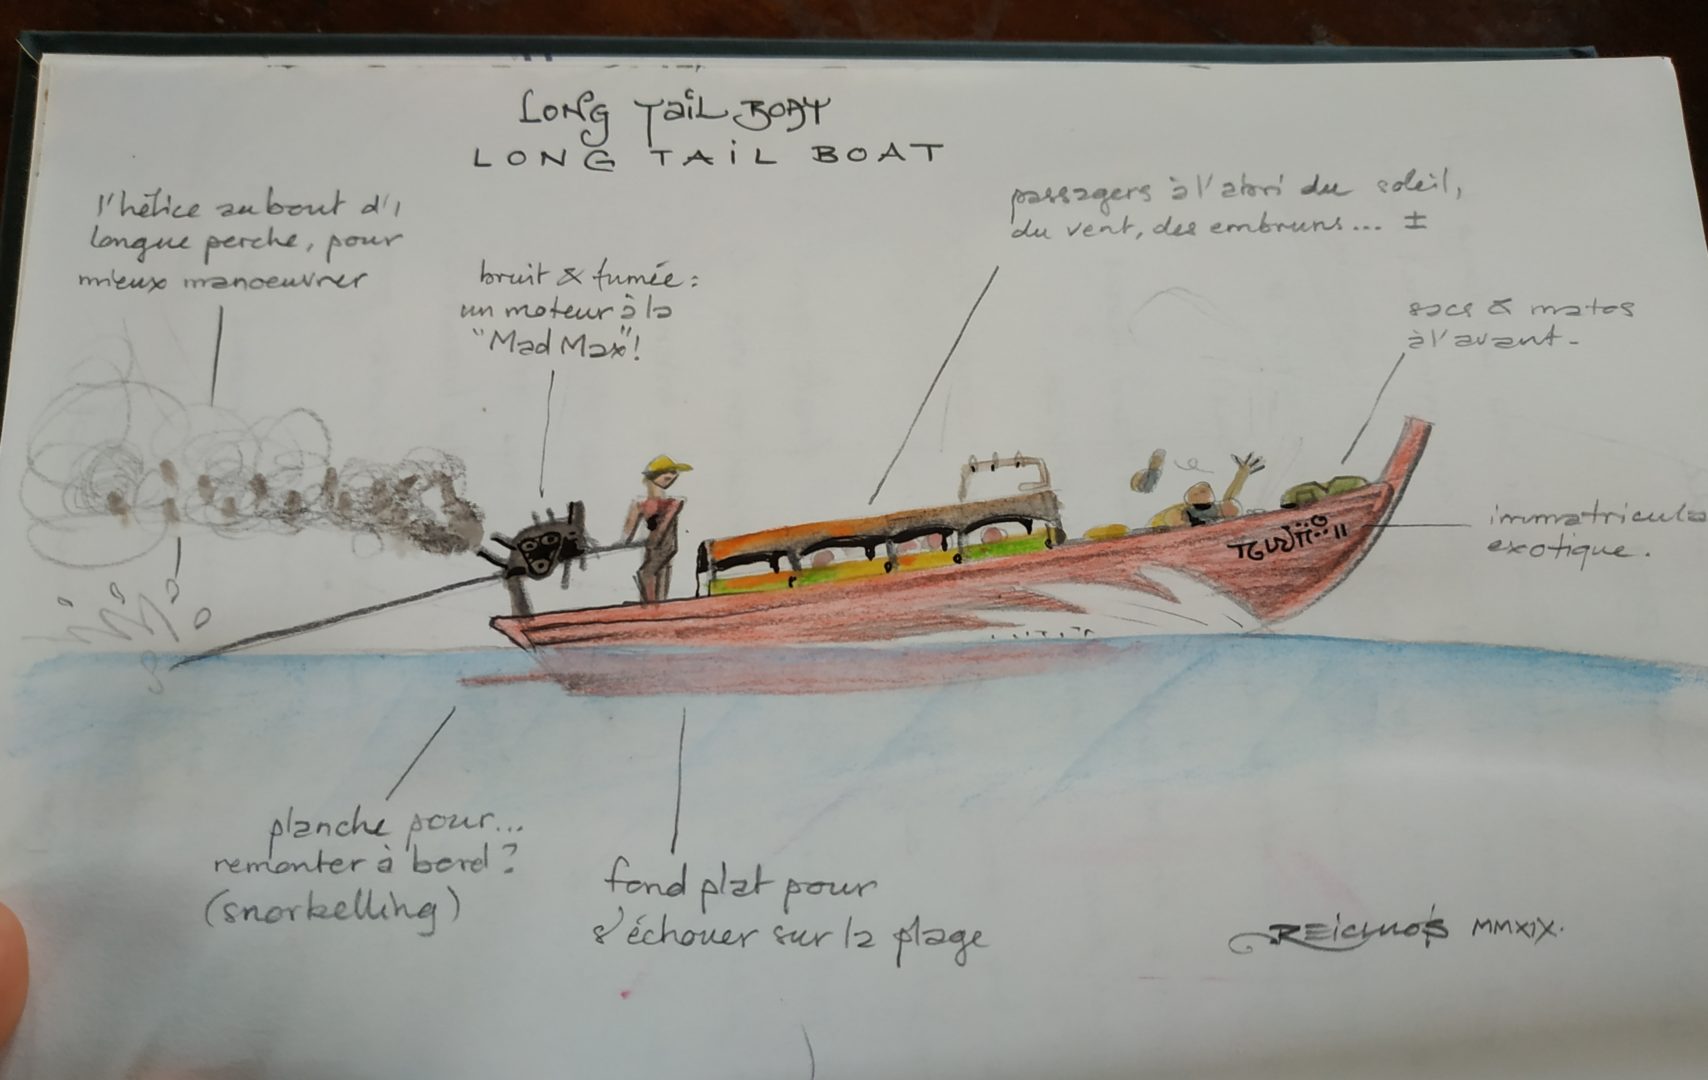 Carnet de vadrouille 2019 : les "Long tail boat" en Thaïlande - les bateaux à longue queue pour les courts trajets